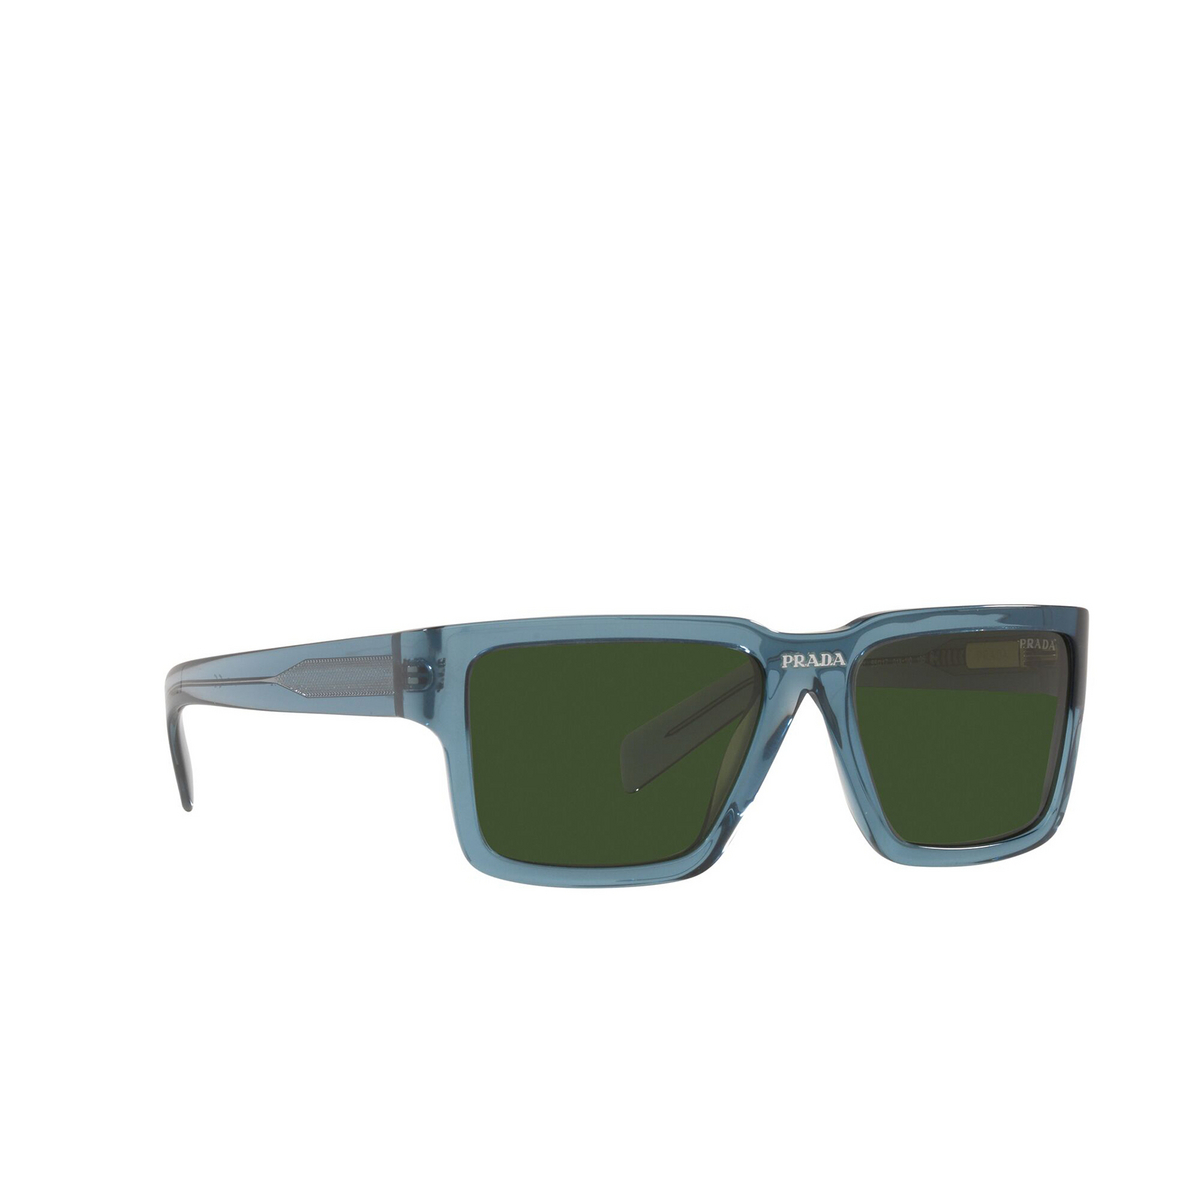 Prada® Rectangle Sunglasses: PR 10YS color Astral Crystal 01X1I0 - three-quarters view.